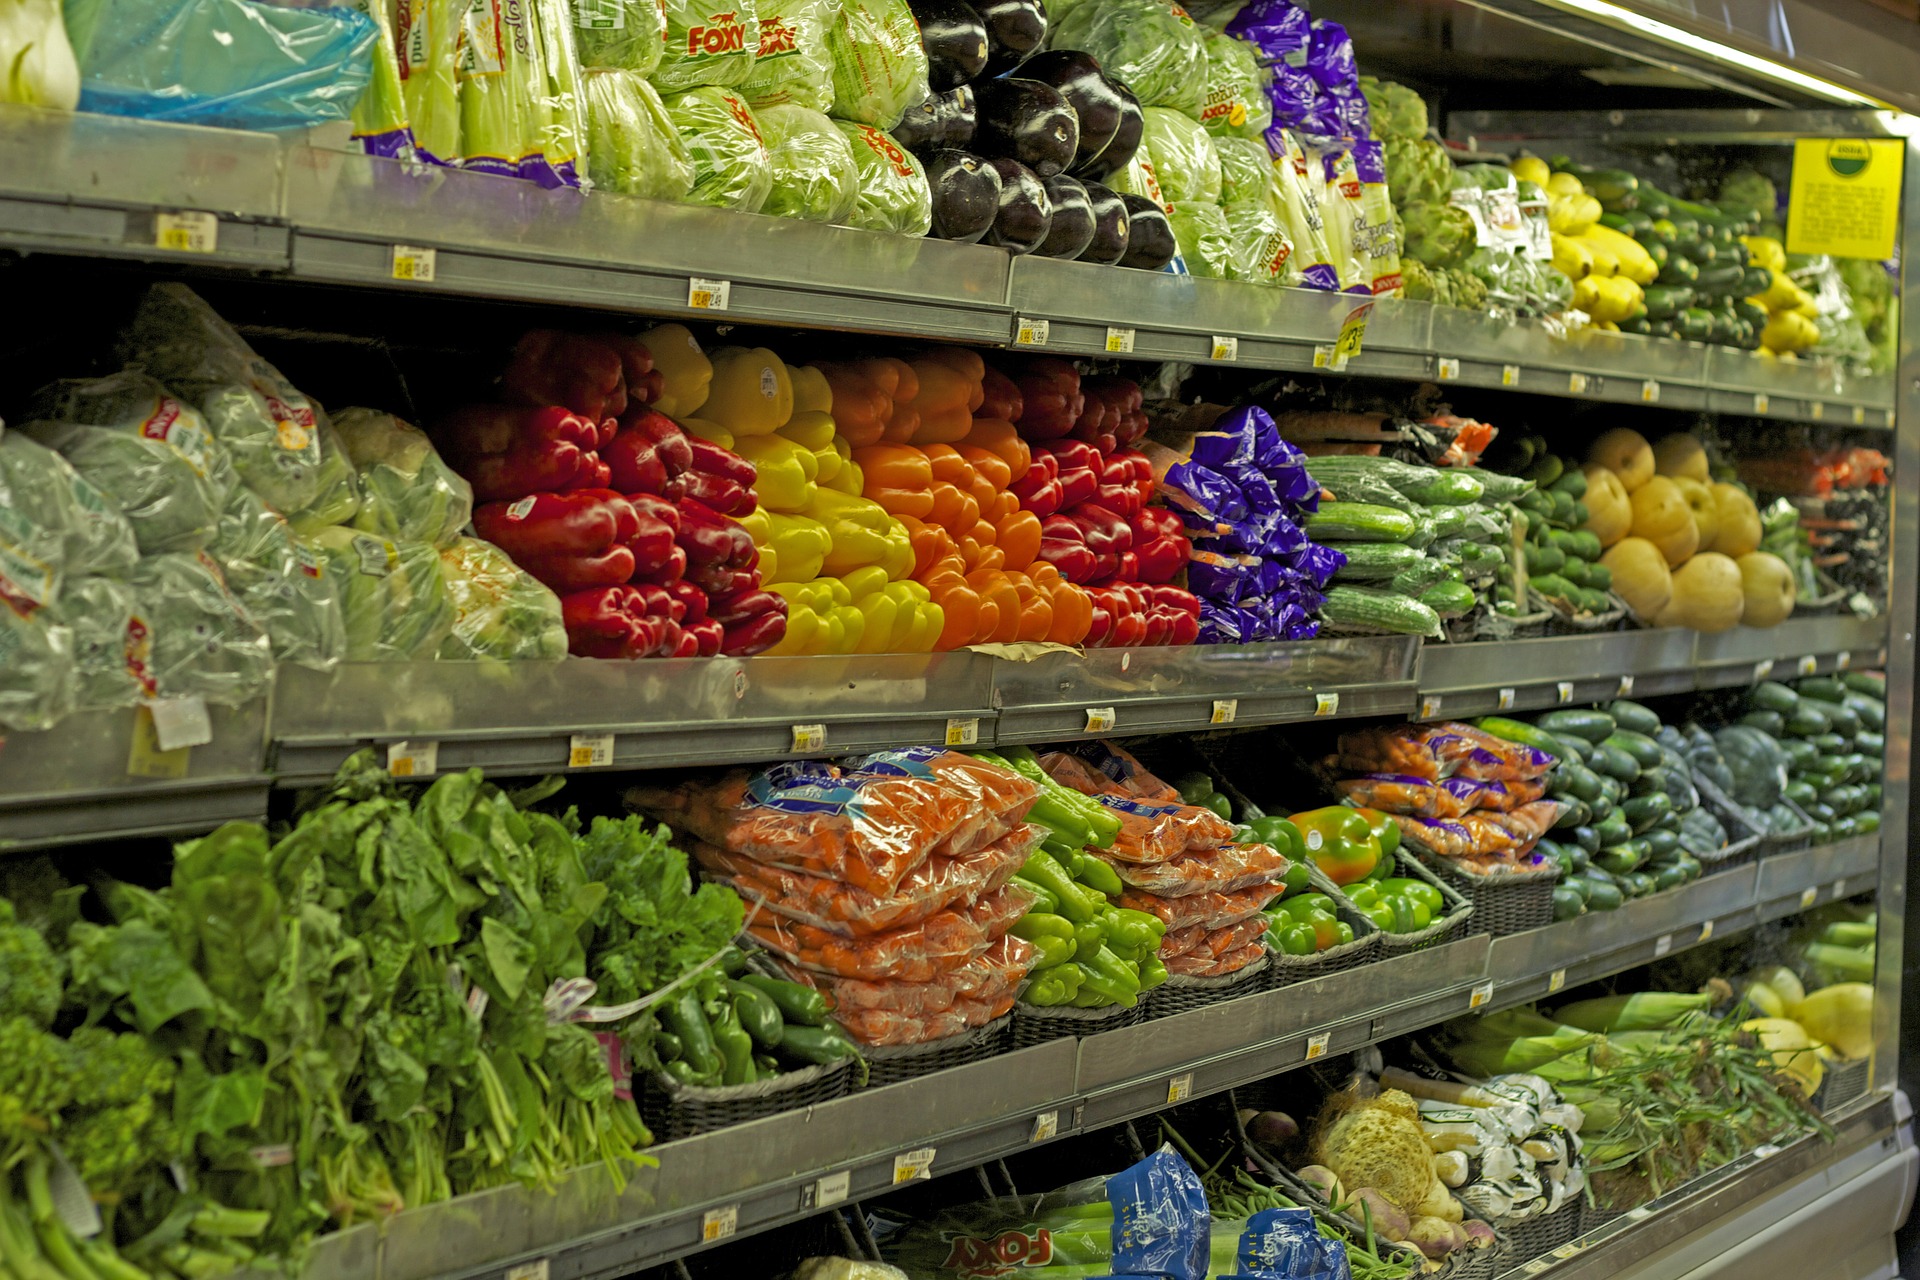 Оголошено набір волонтерів для контролю якості продуктів у супермаркетах